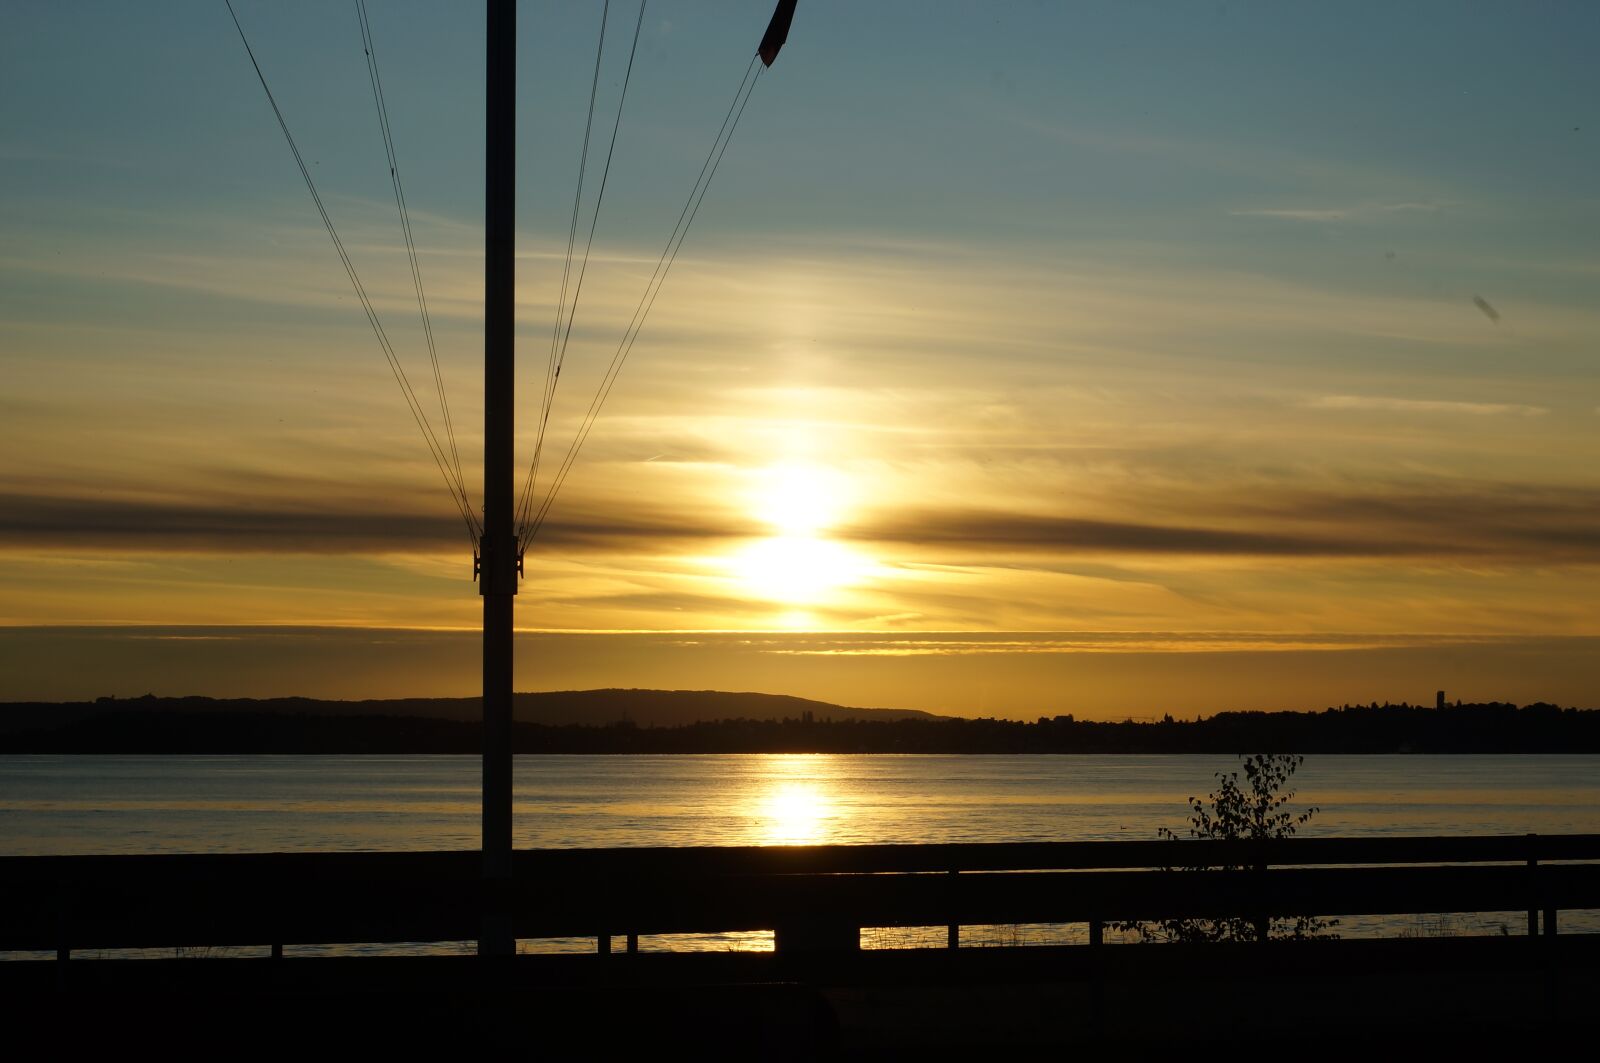 Sony SLT-A57 + Minolta AF 50mm F1.7 sample photo. Lake constance, sunset, abendstimmung photography